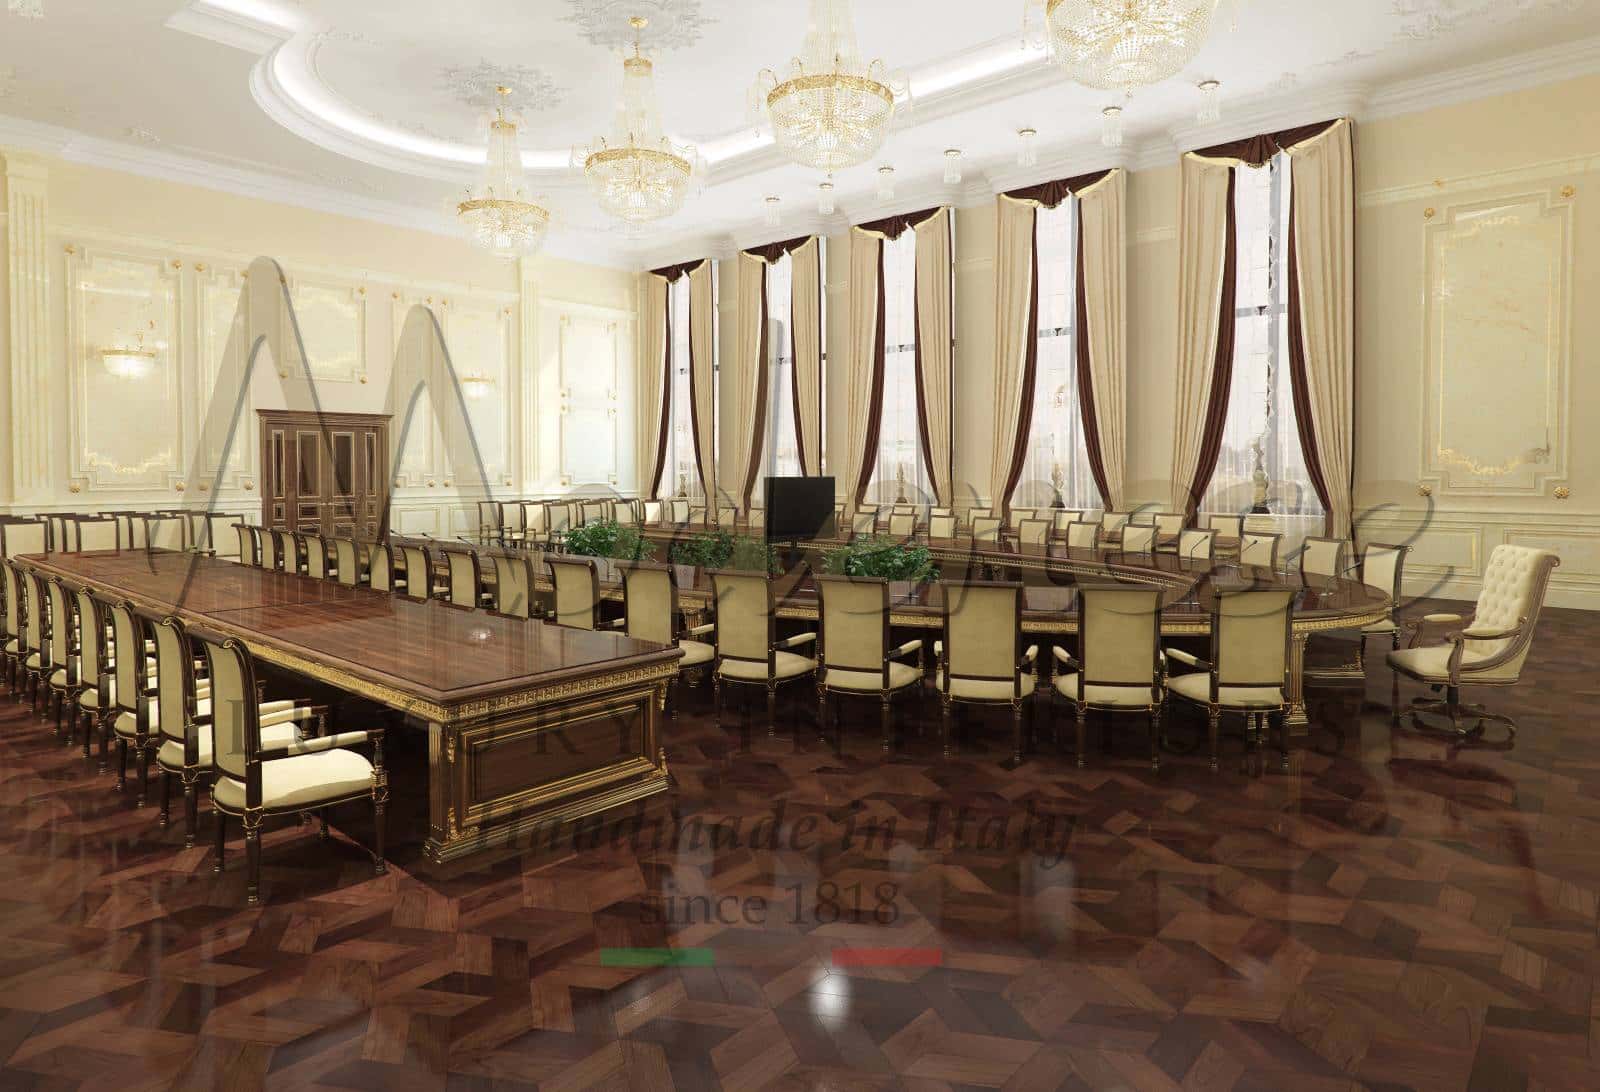 отельная роскошная мебель на заказ классический роскошный стиль дизайн проект мебели для отеля гостинечная мебель на заказ элегантная качественная элитная мебель для отеля класса люкс мебель для президентского номера